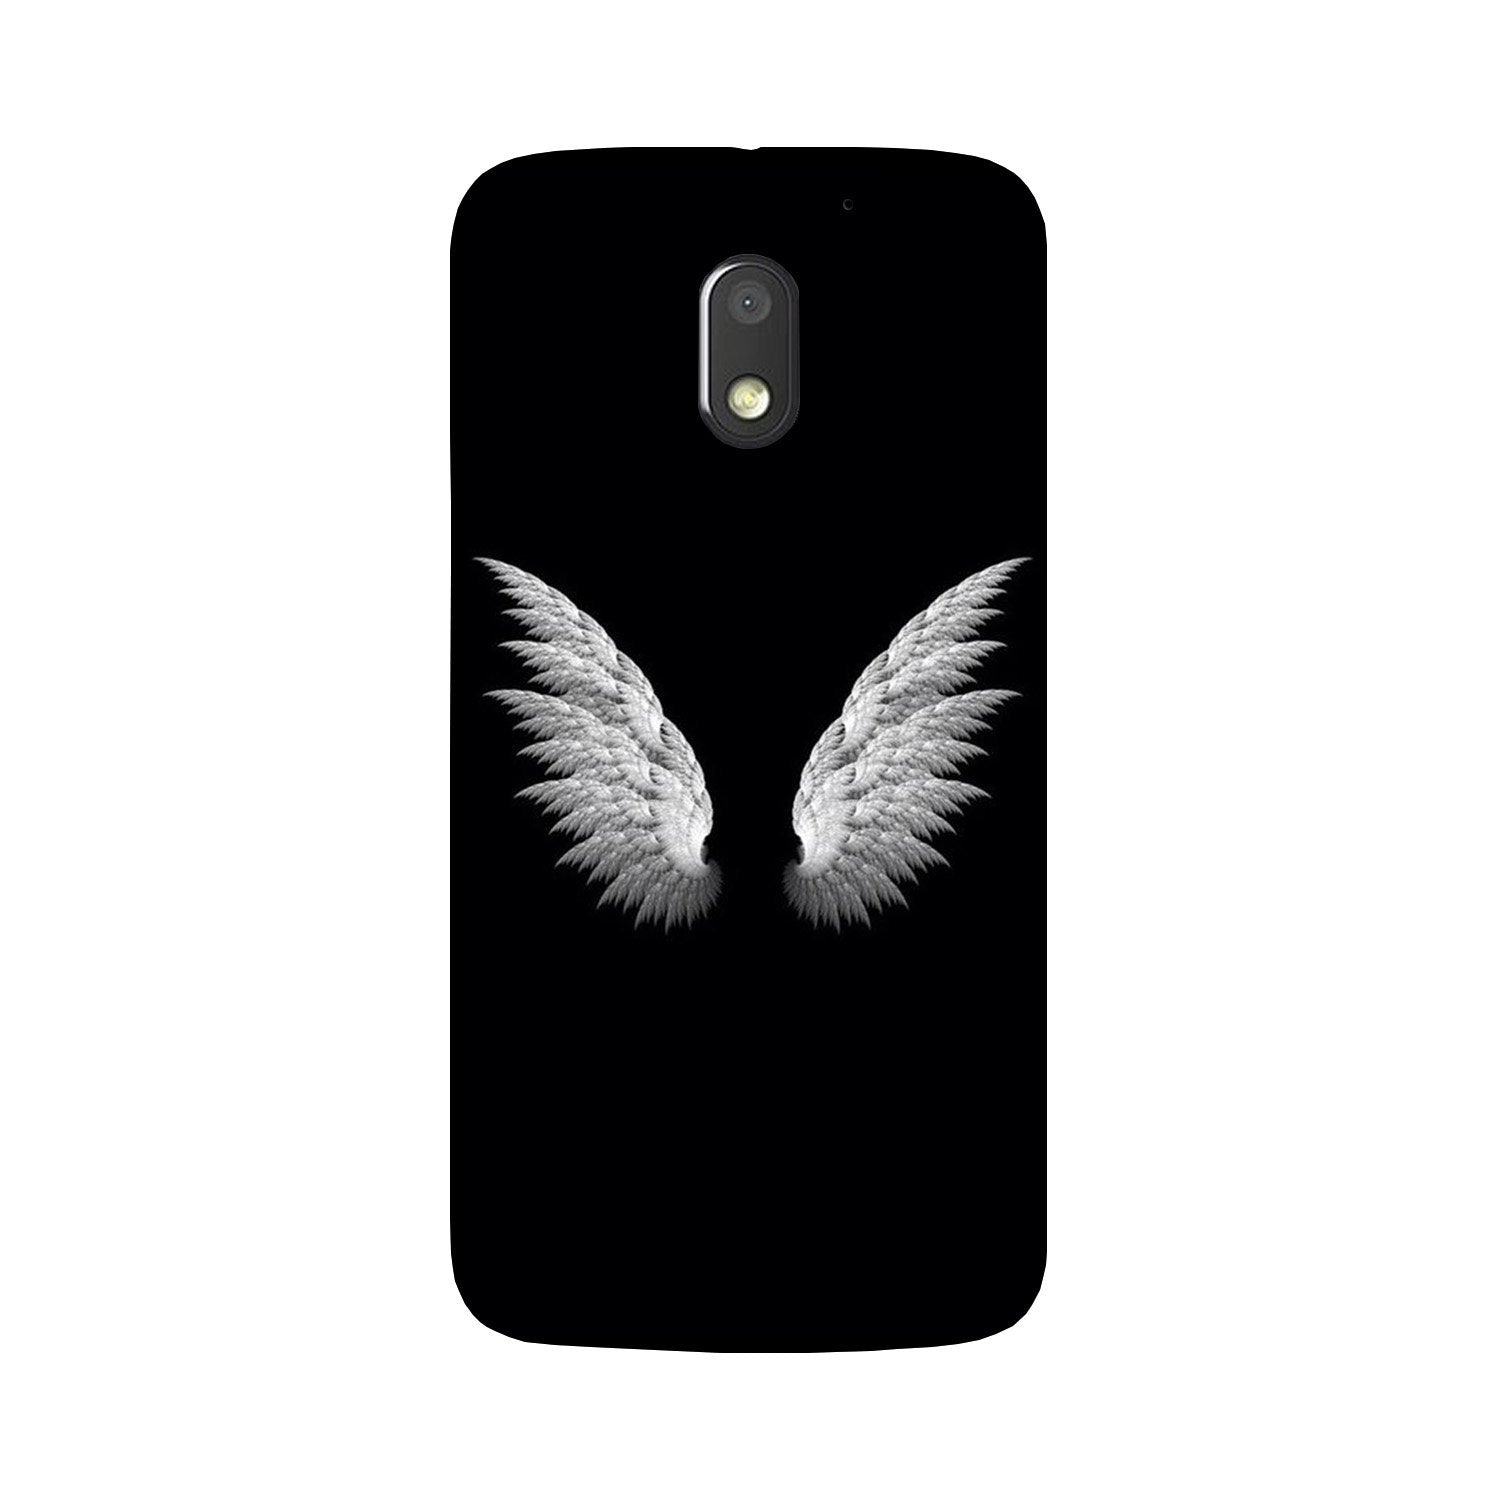 Angel Case for Moto G4 Play(Design - 142)